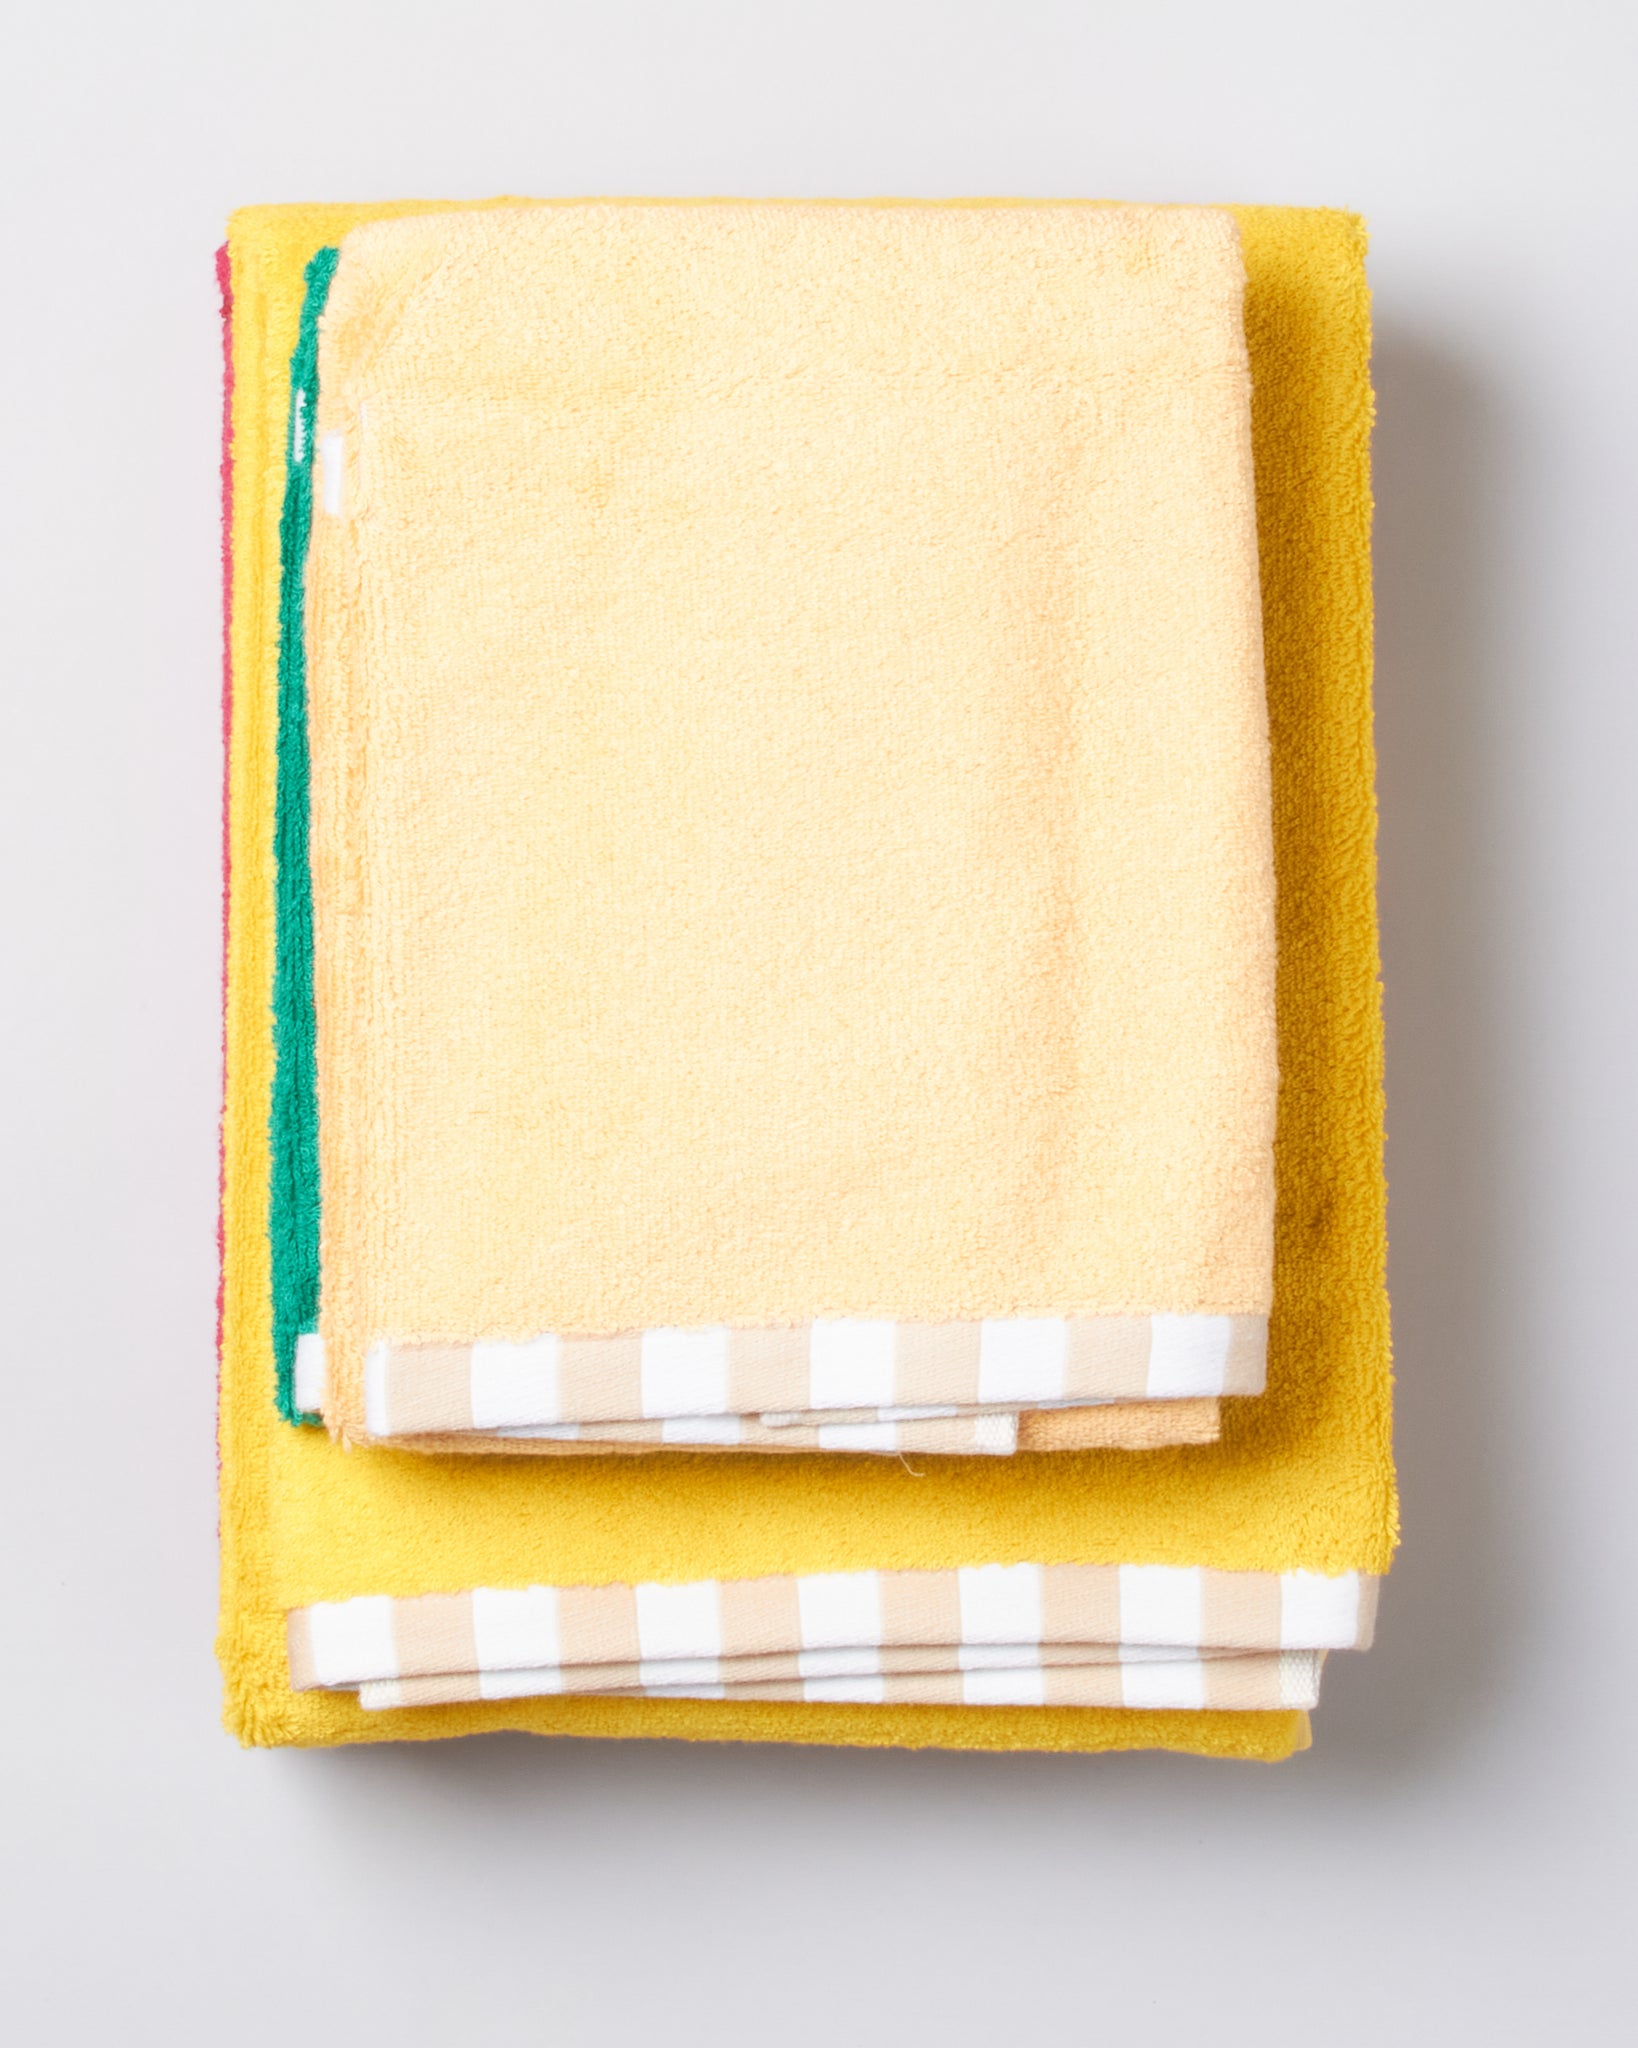 Dusen Dusen Two-Tone Towels